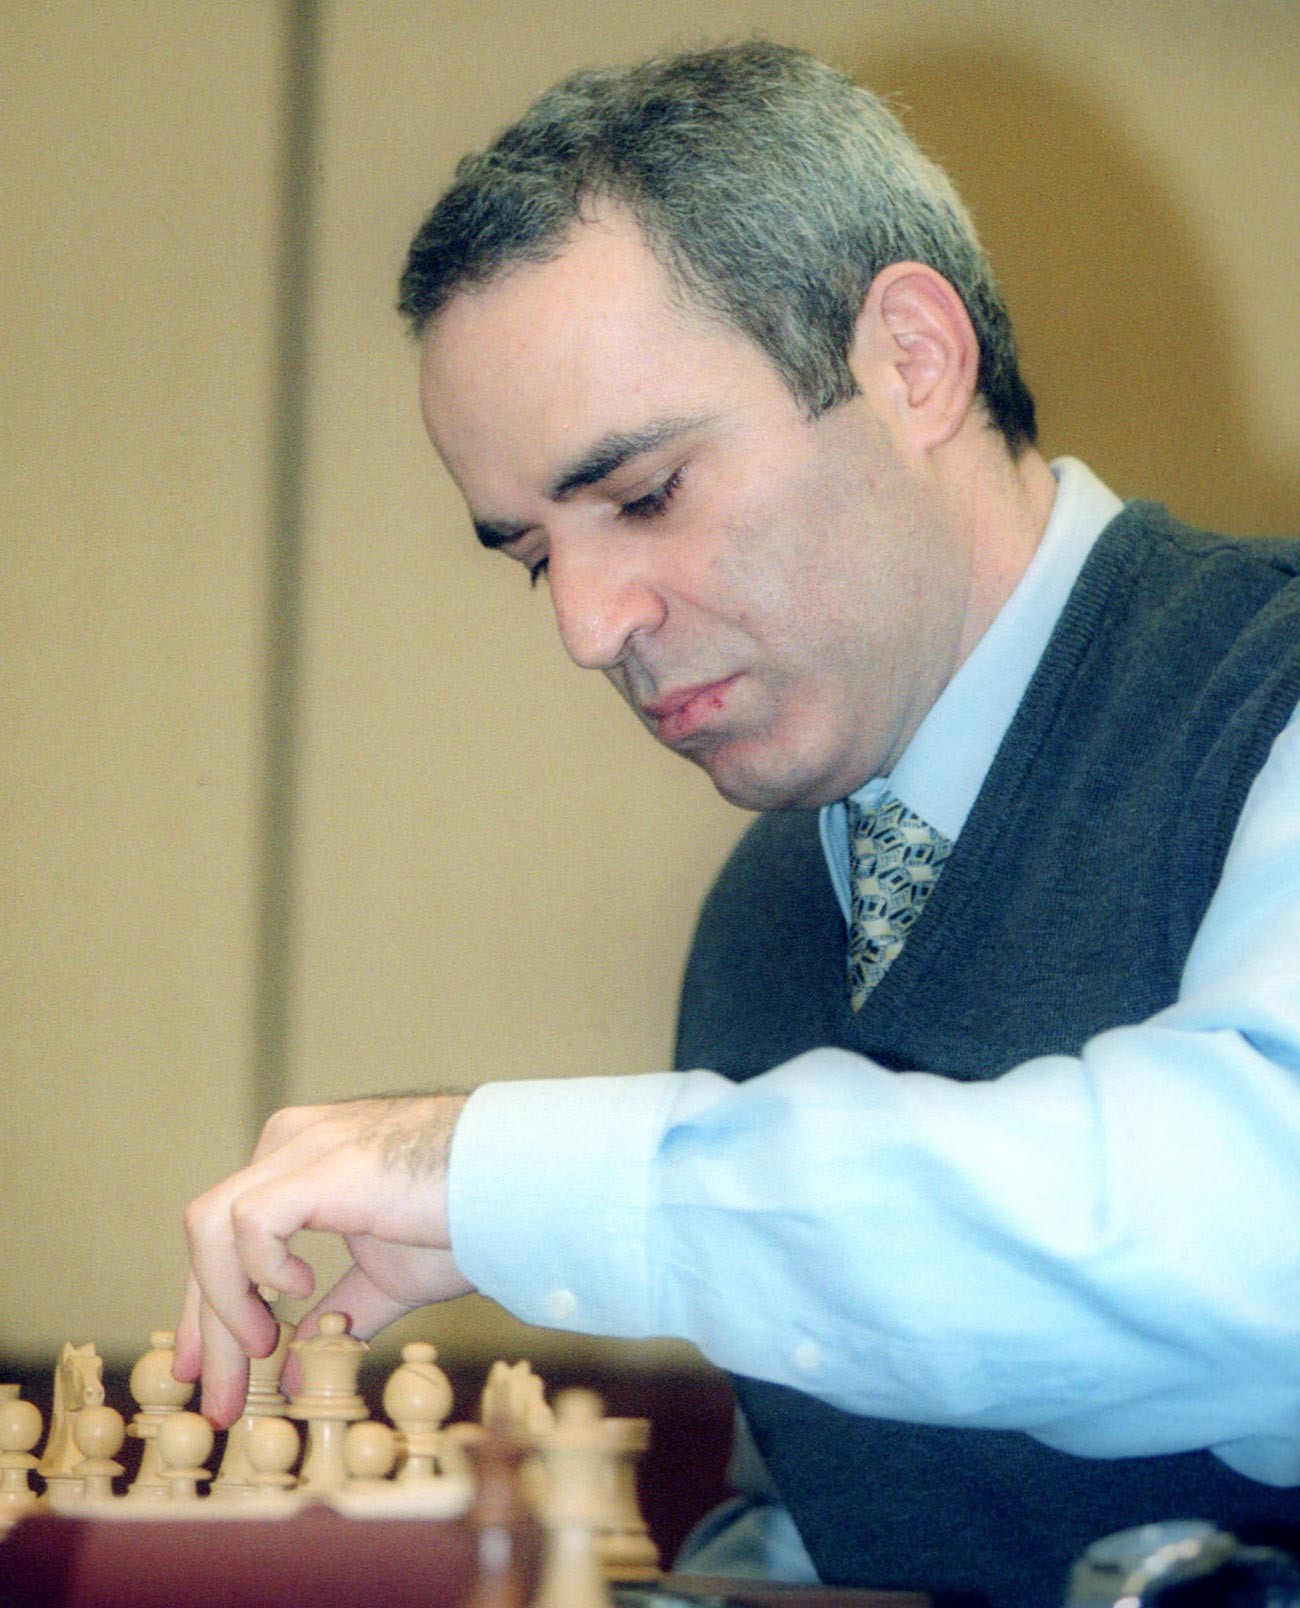 Ruski šahovski velemajstor Gari Kasparov

